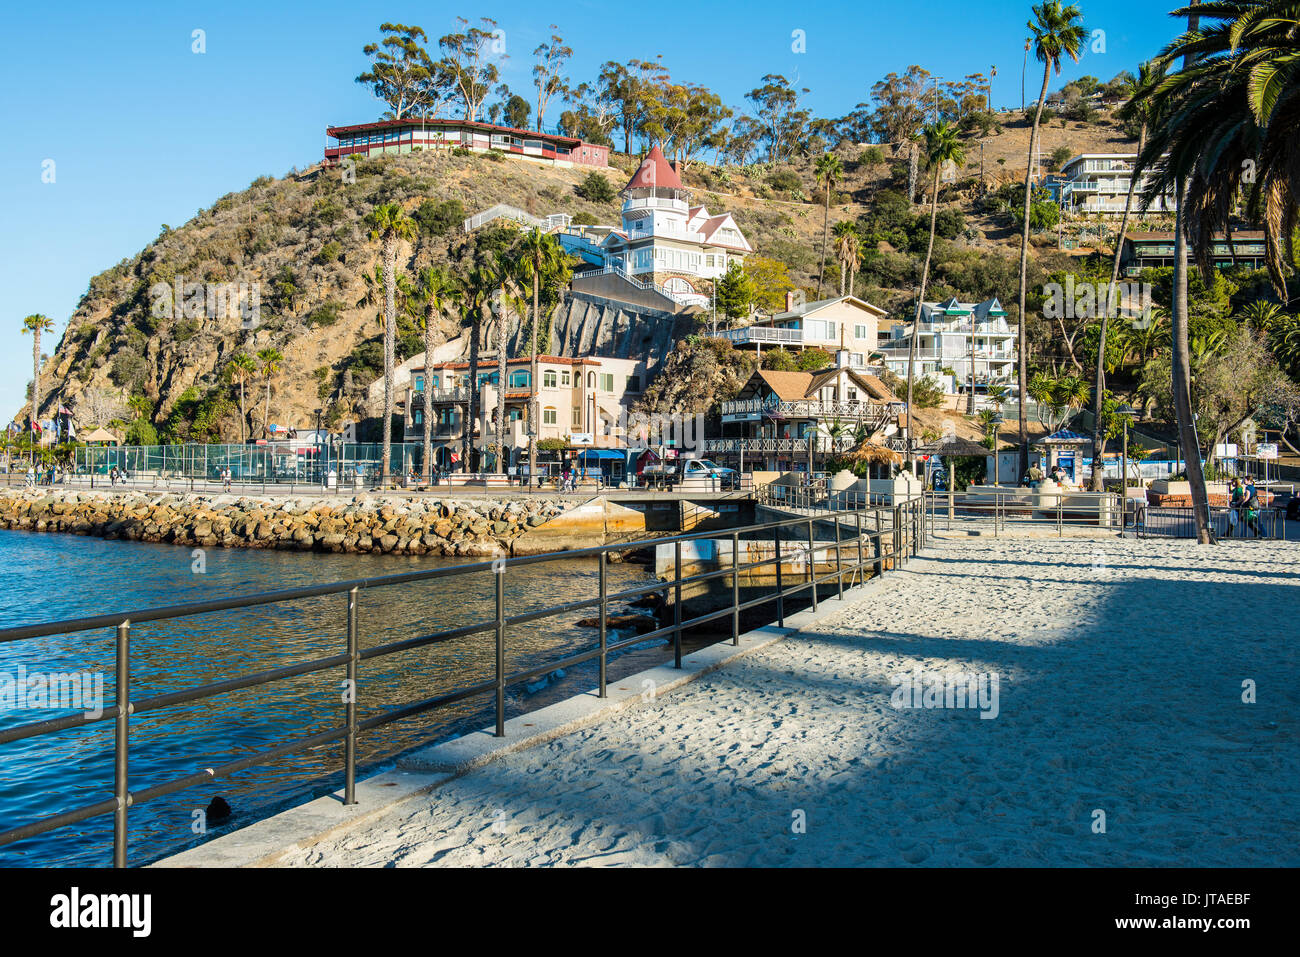 La città di Avalon, Isola di Santa Catalina, California, Stati Uniti d'America, America del Nord Foto Stock